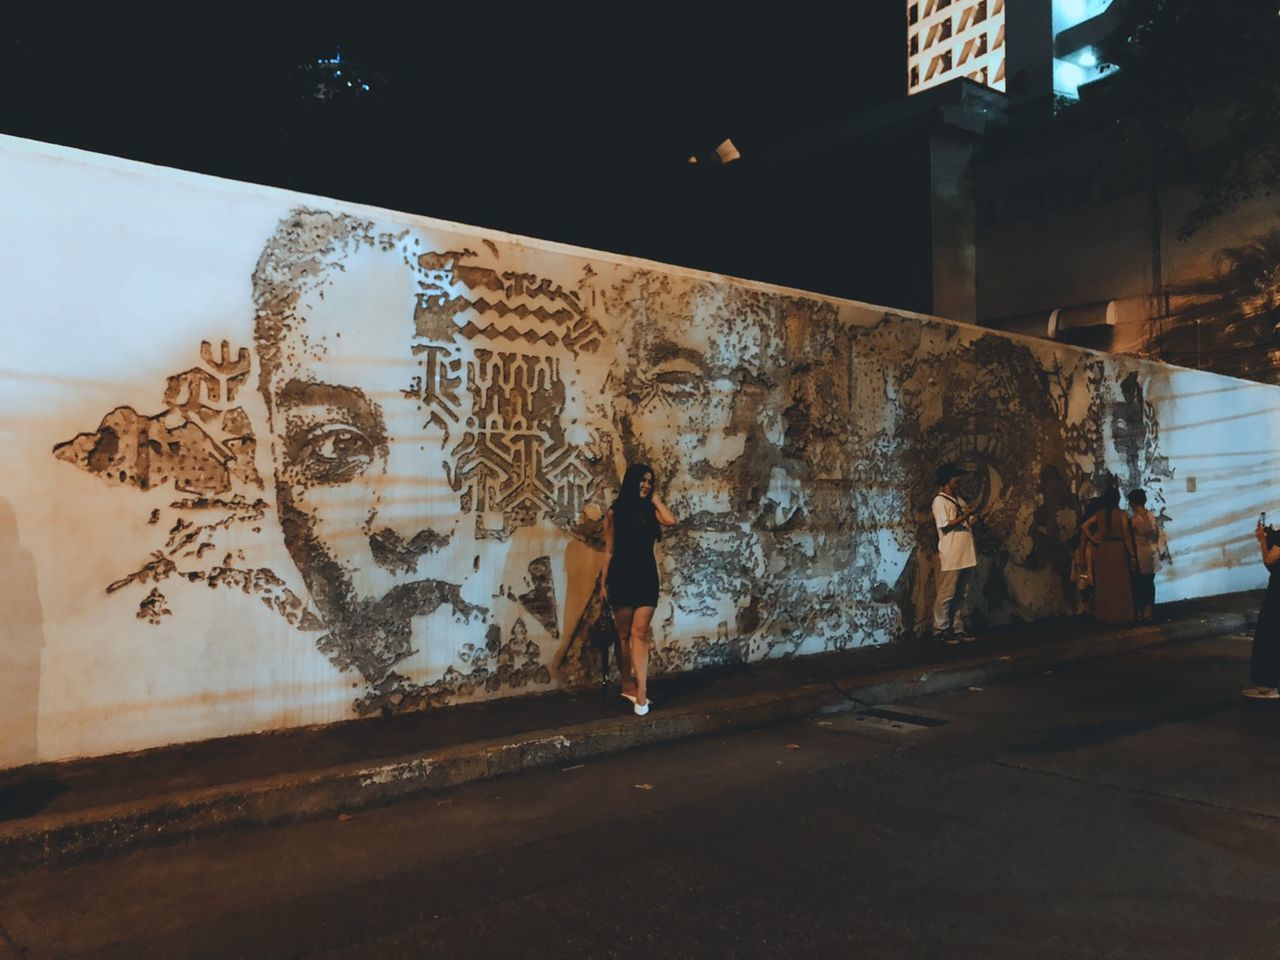 GRAFFITI ON WALL BY ILLUMINATED CITY